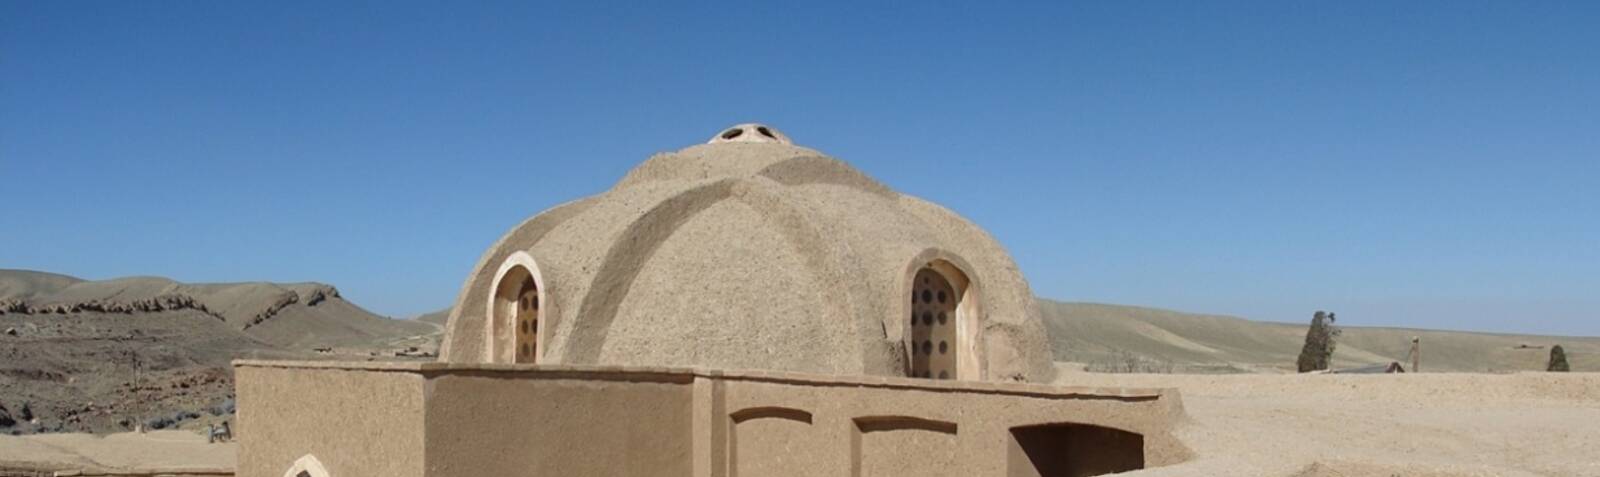 La casa de Mulla Sadra